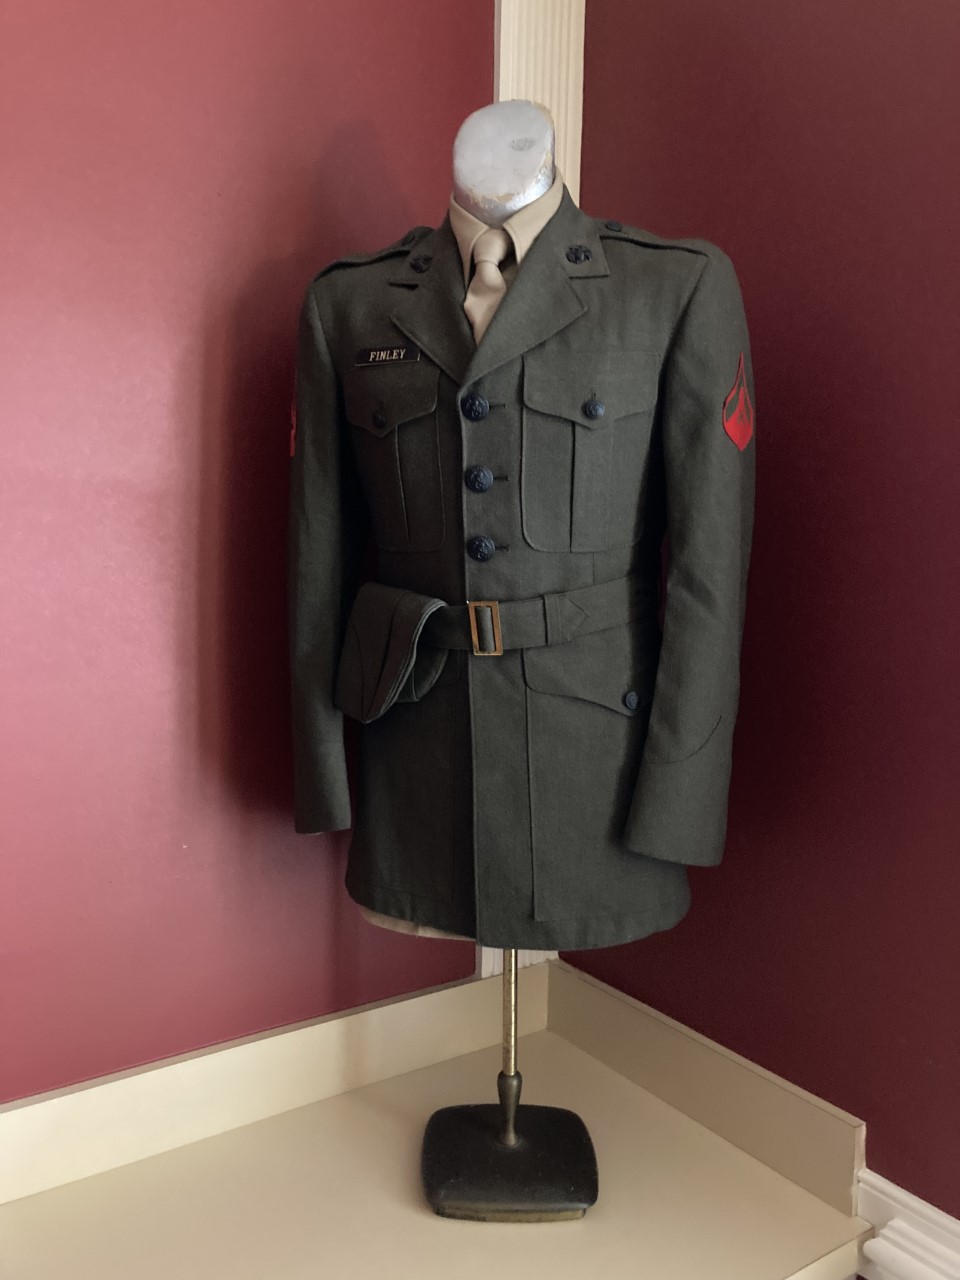 ChamberMarine uniform